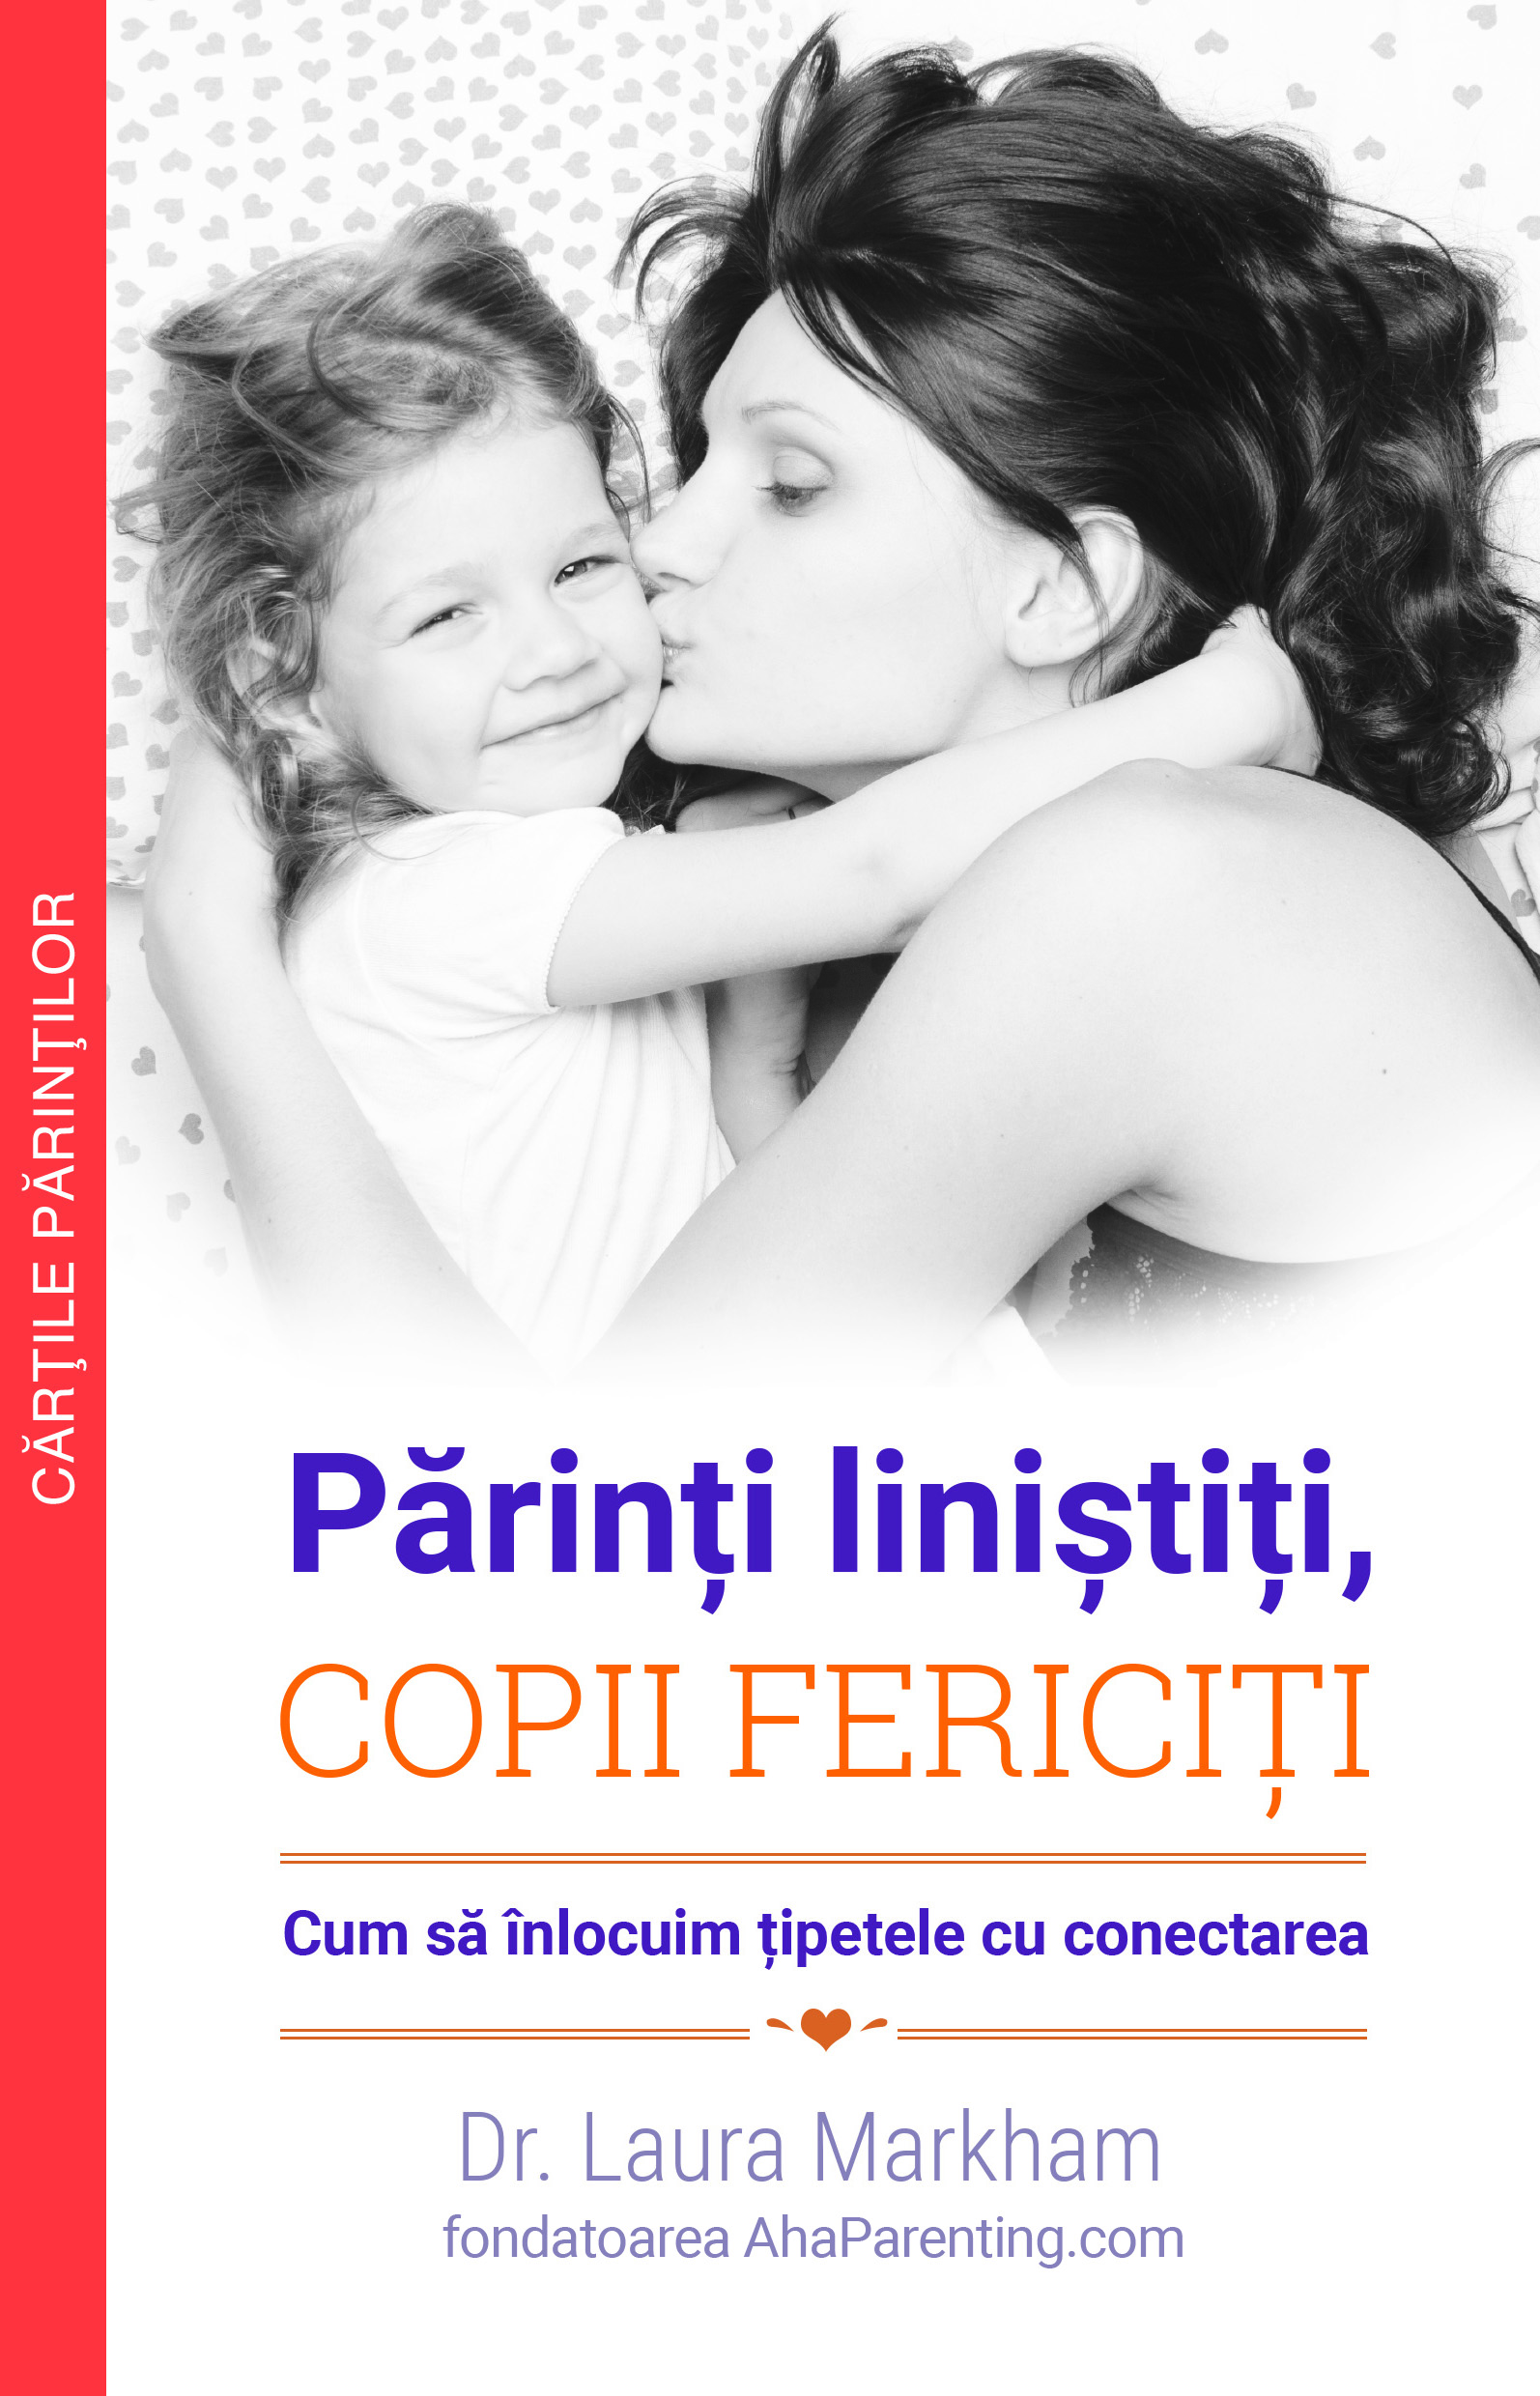 Coperta_CopiiFericiti_c1